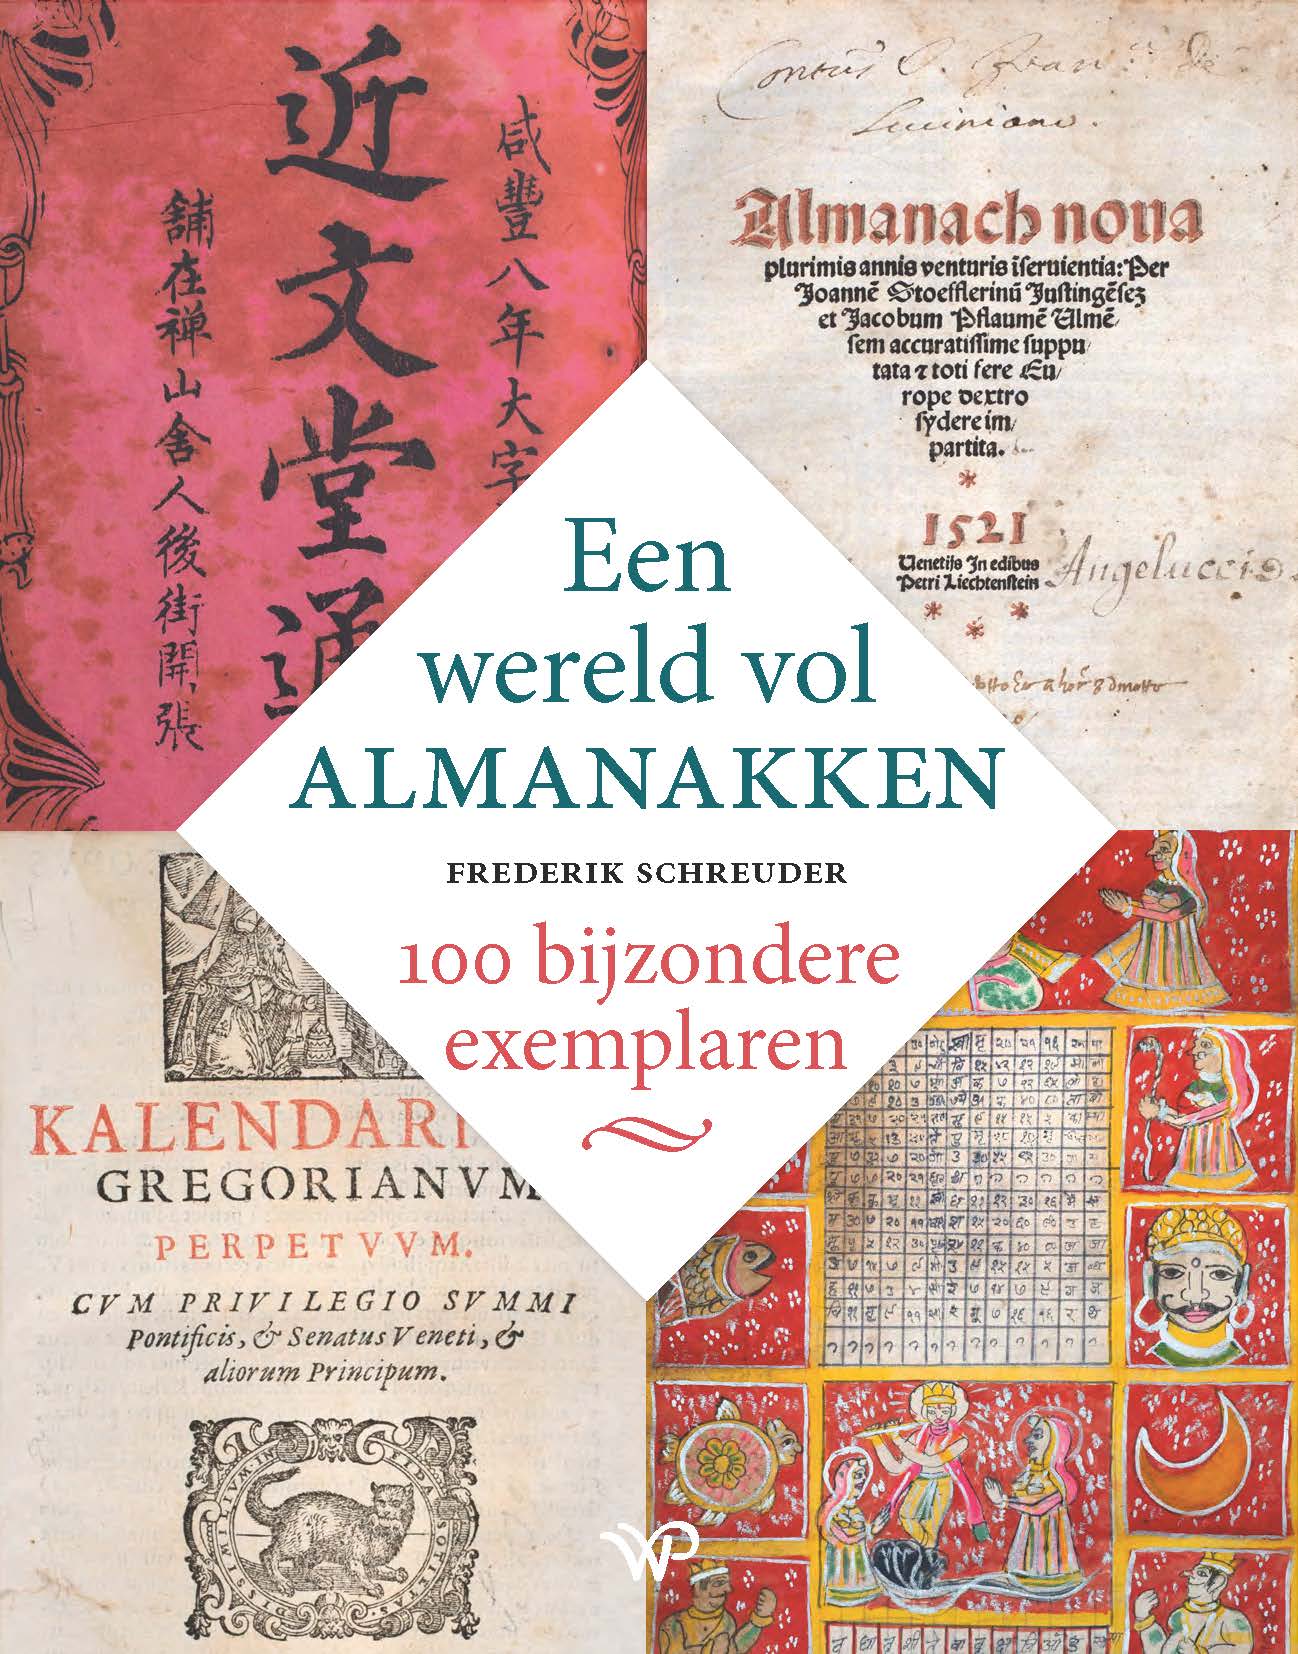 Boekpresentatie 'Een wereld vol Almanakken' donderdag 6 april in Broekhuis Apeldoorn